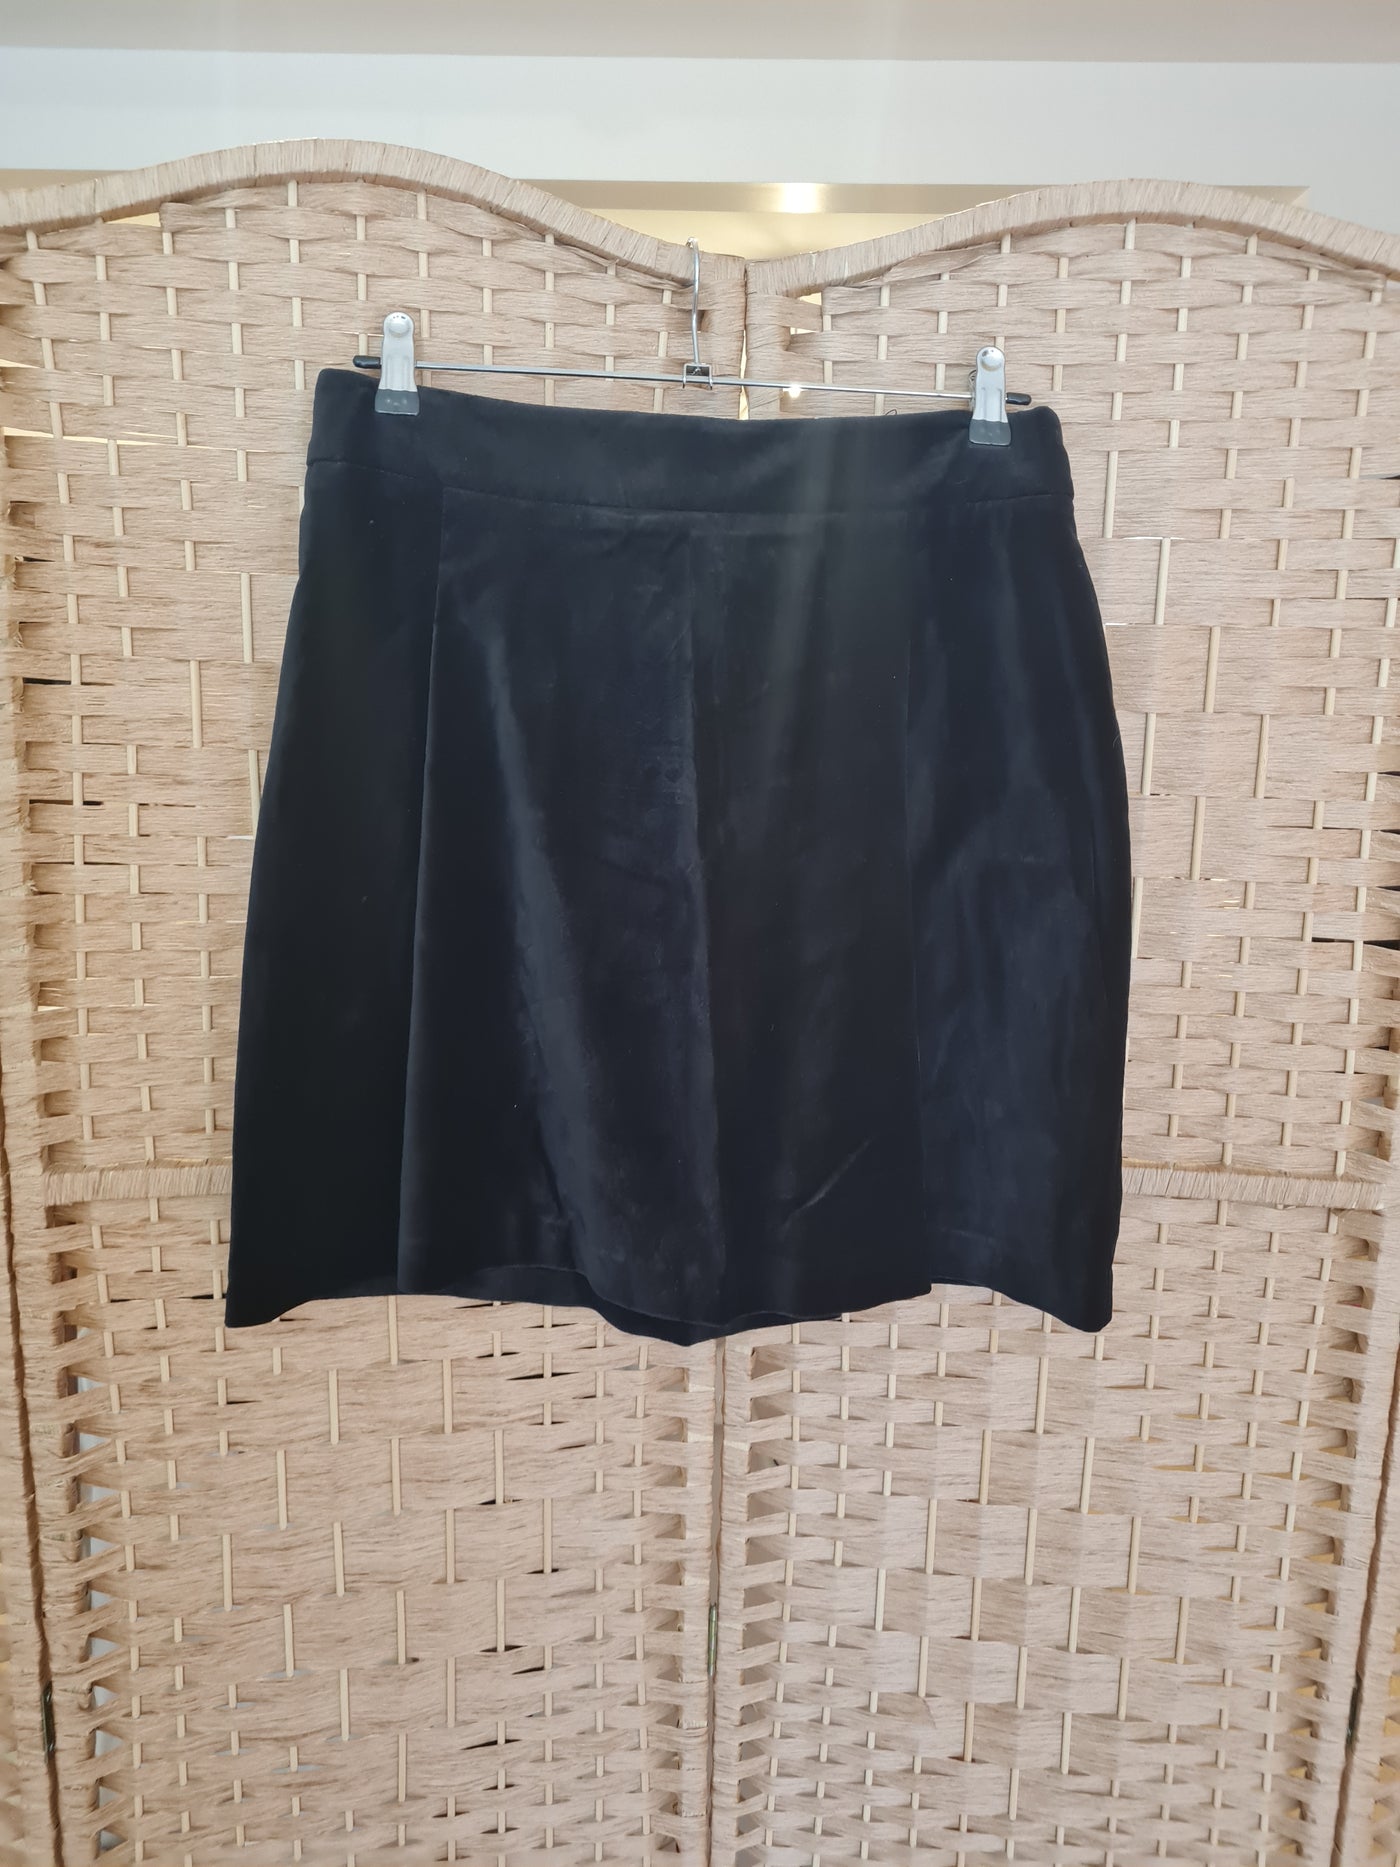 M&S Black Velvet Mini Skirt Size 12